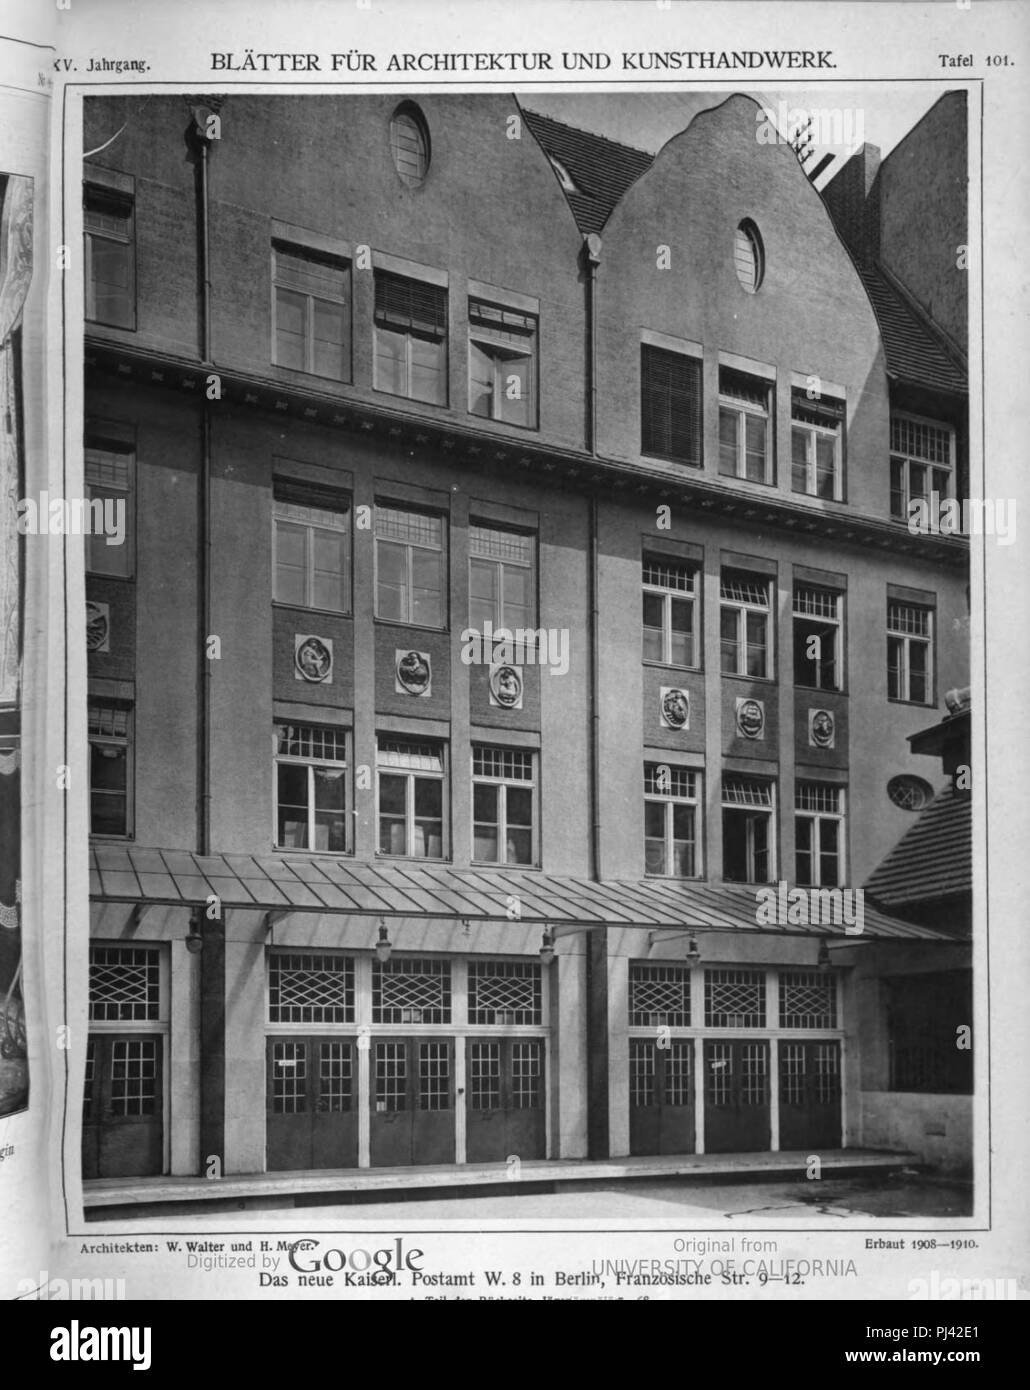 B kaiserl postamt französ str. 9-12 und jägerstr. 67-68 (blätter arch kunsthandw 25 (1912), Tf 101. Stock Photo